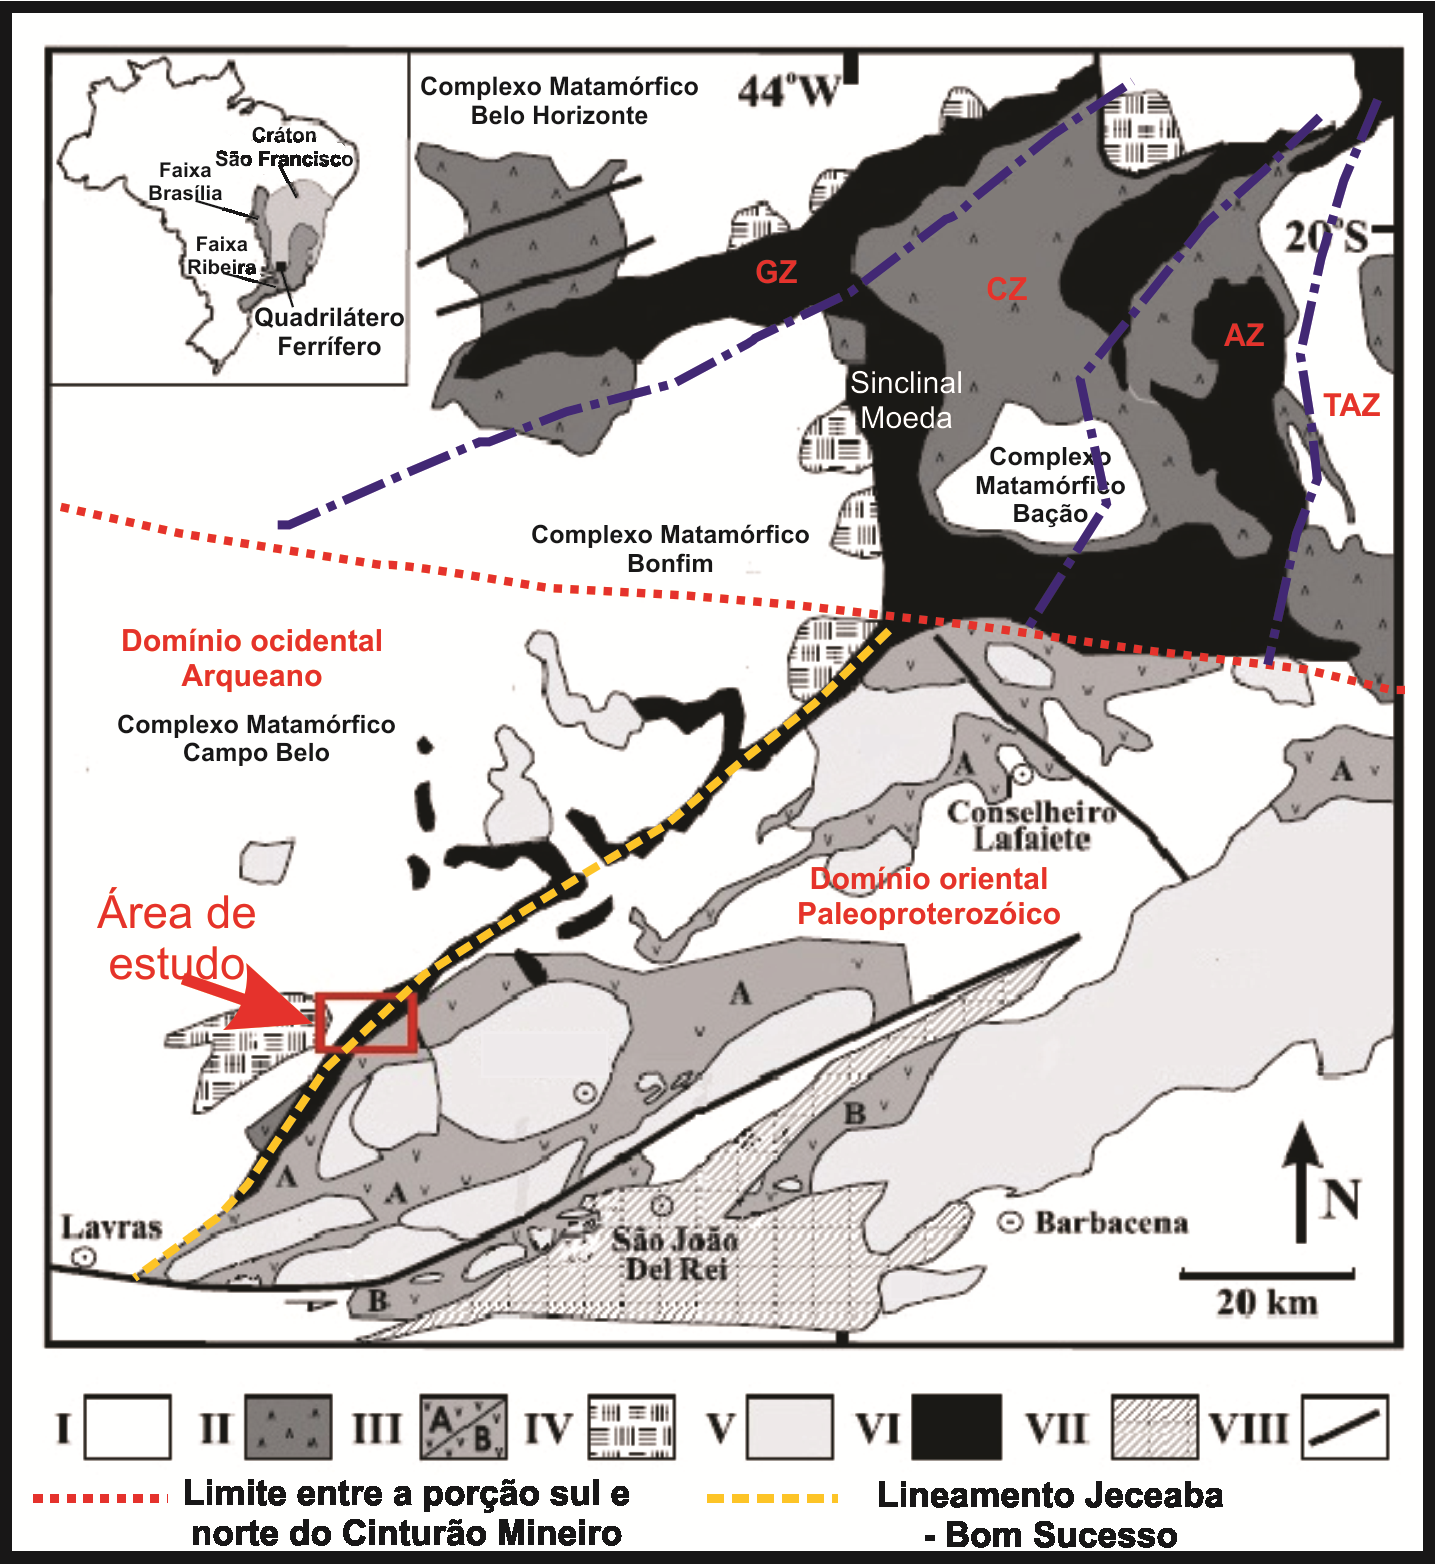 Figura 7: Mapa Geológico simplificado indicando porção norte e sul do Cinturão Mineiro, e zonas metamórficas (adaptado de Ávila et al., 2003 in: Ávila et al., 2006).